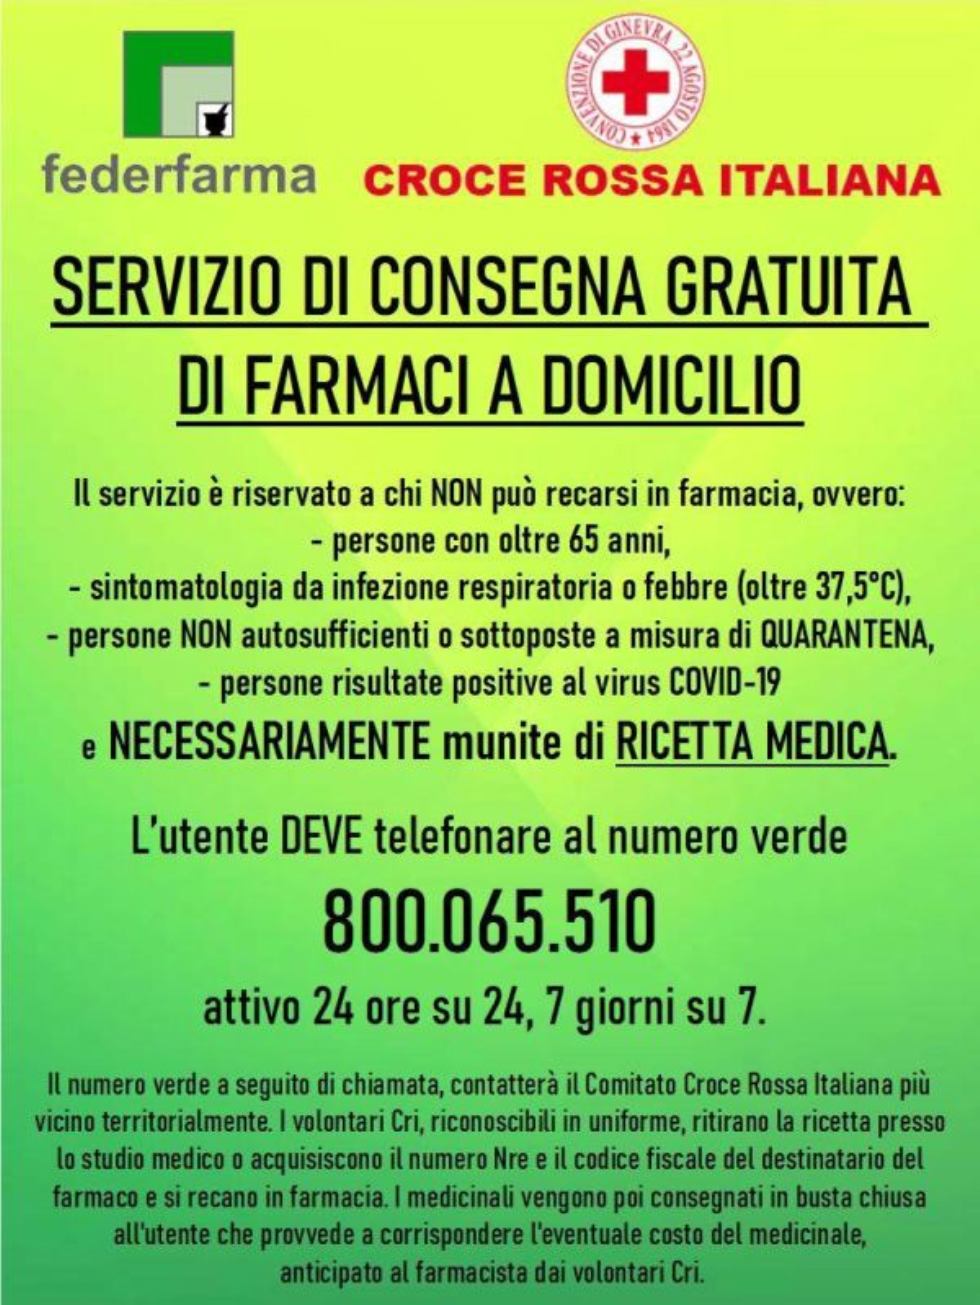 imm_6235_locandina_consegna_farmaci_a_domicilio.jpg